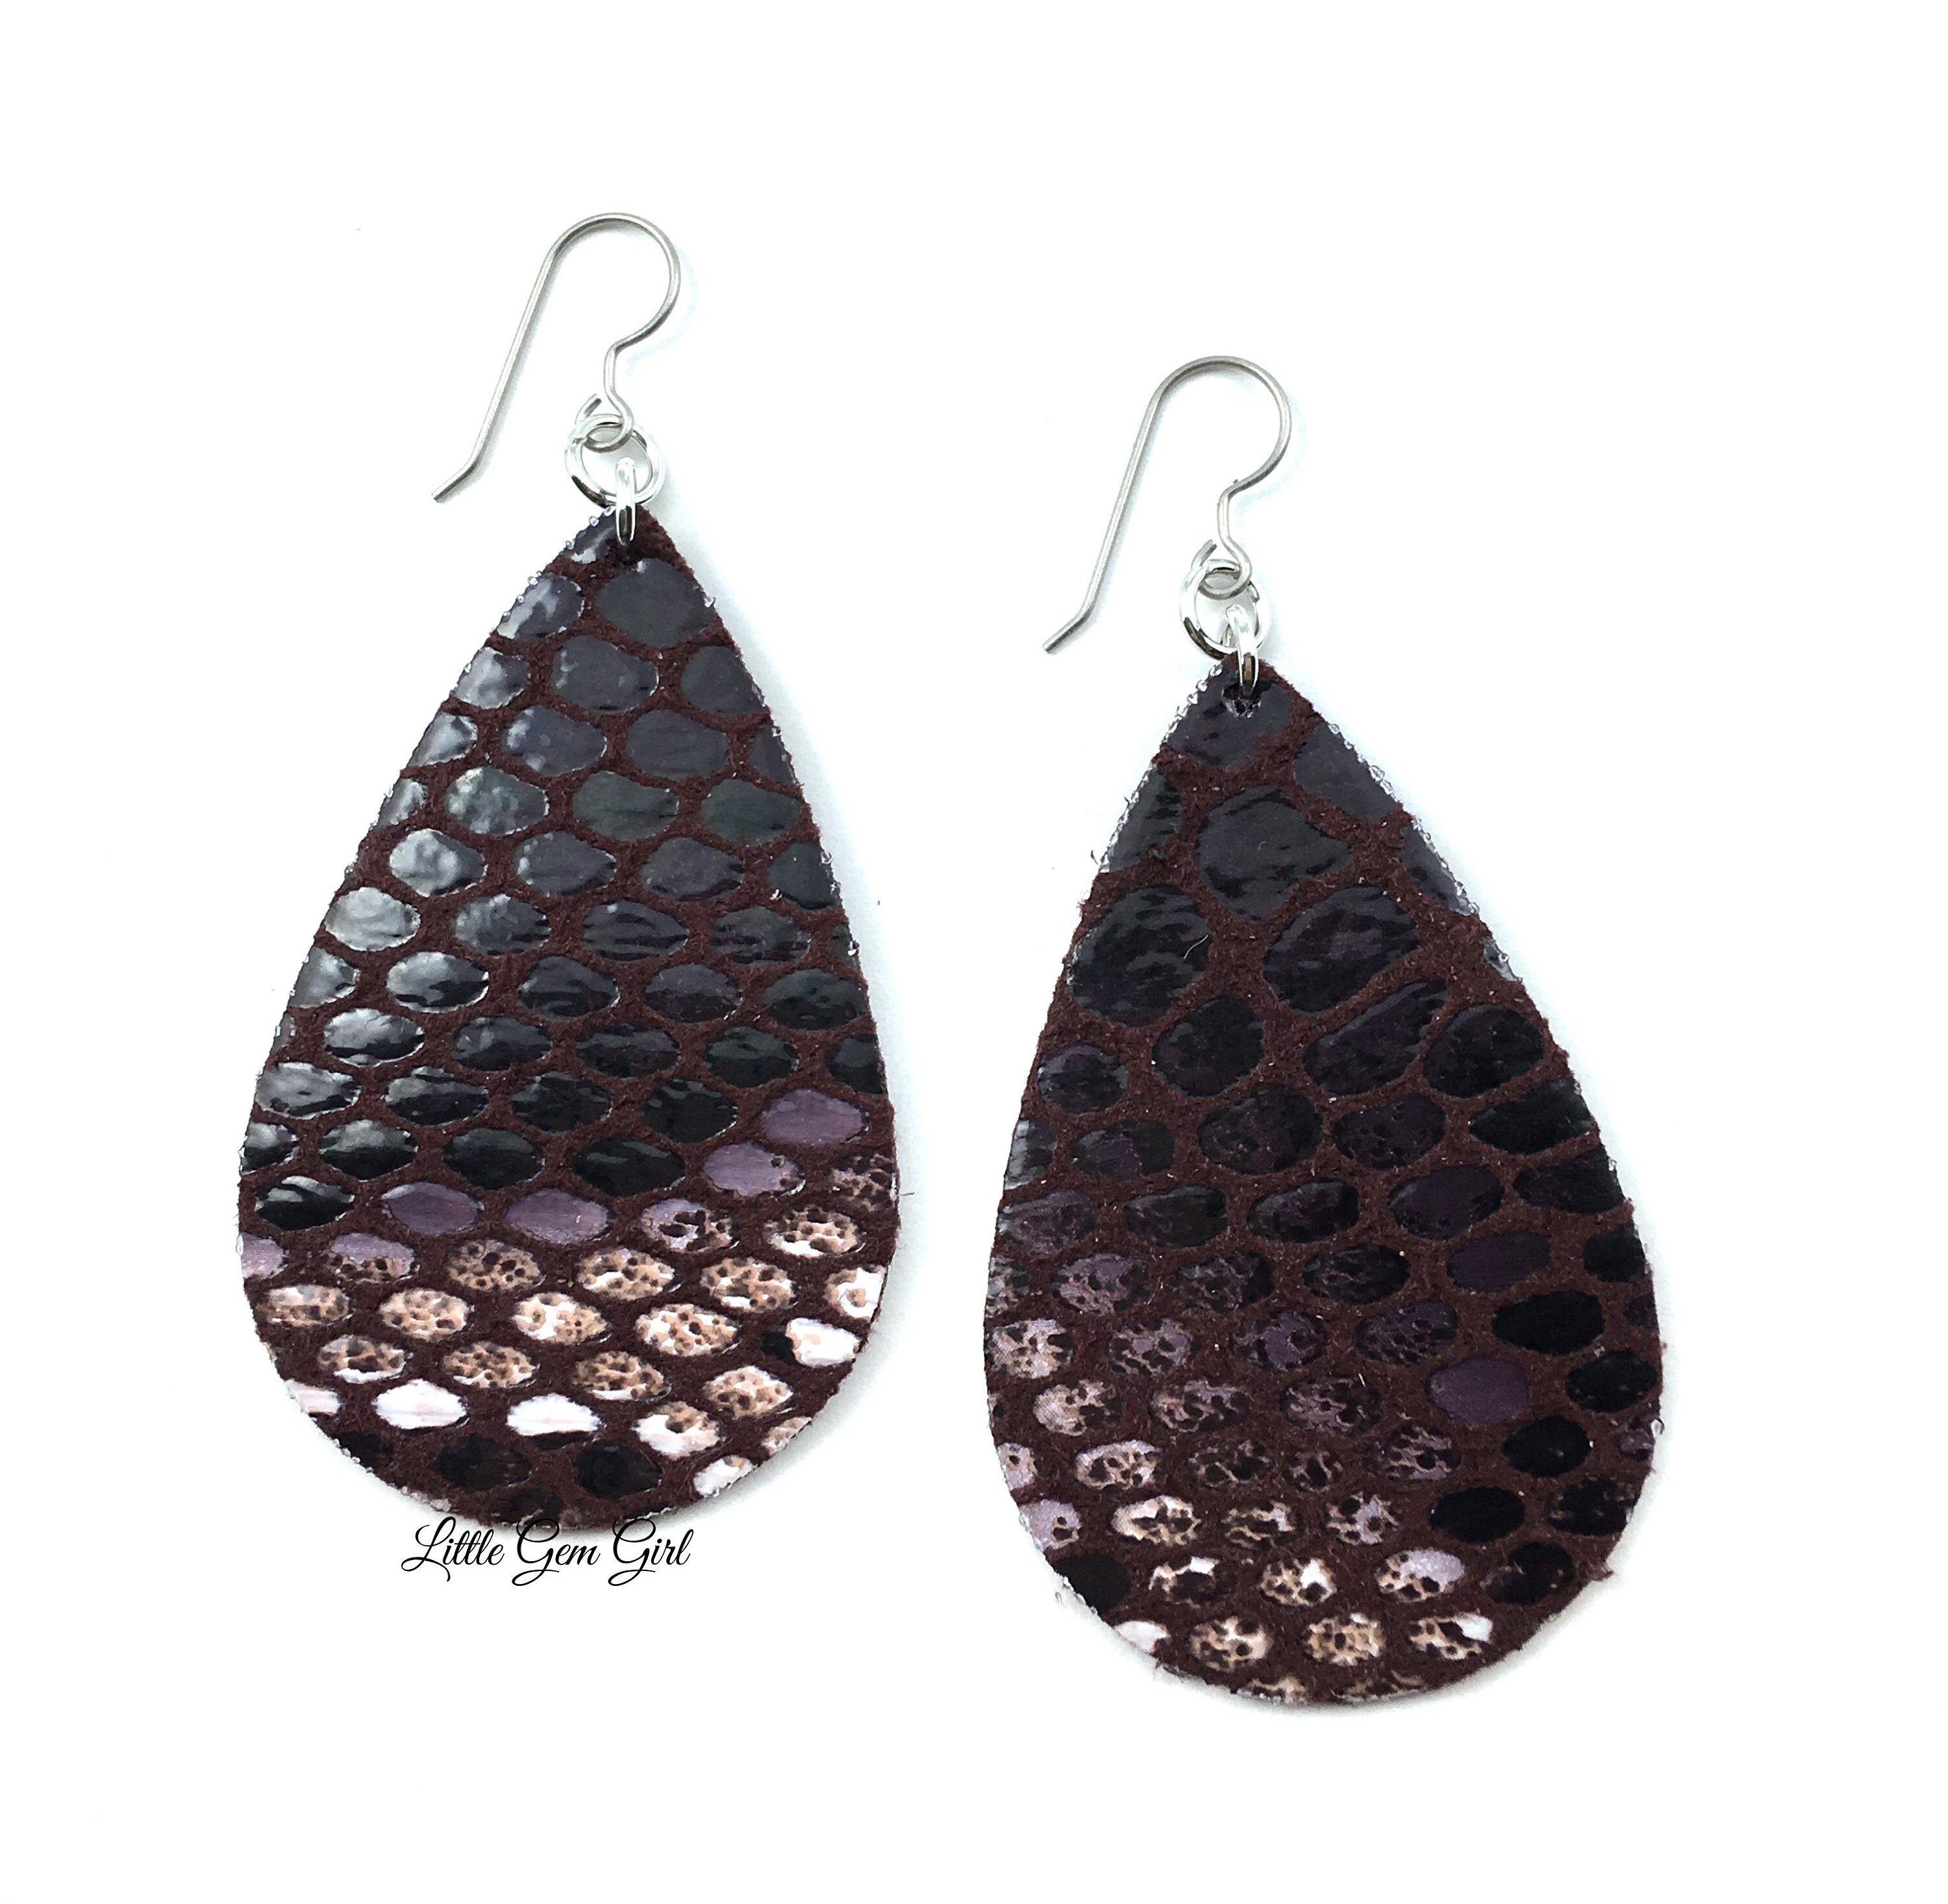 12 Pairs Faux Leather Earrings for Women Handmade Teardrop Lightweight Leopard Print Dangle Earrings 